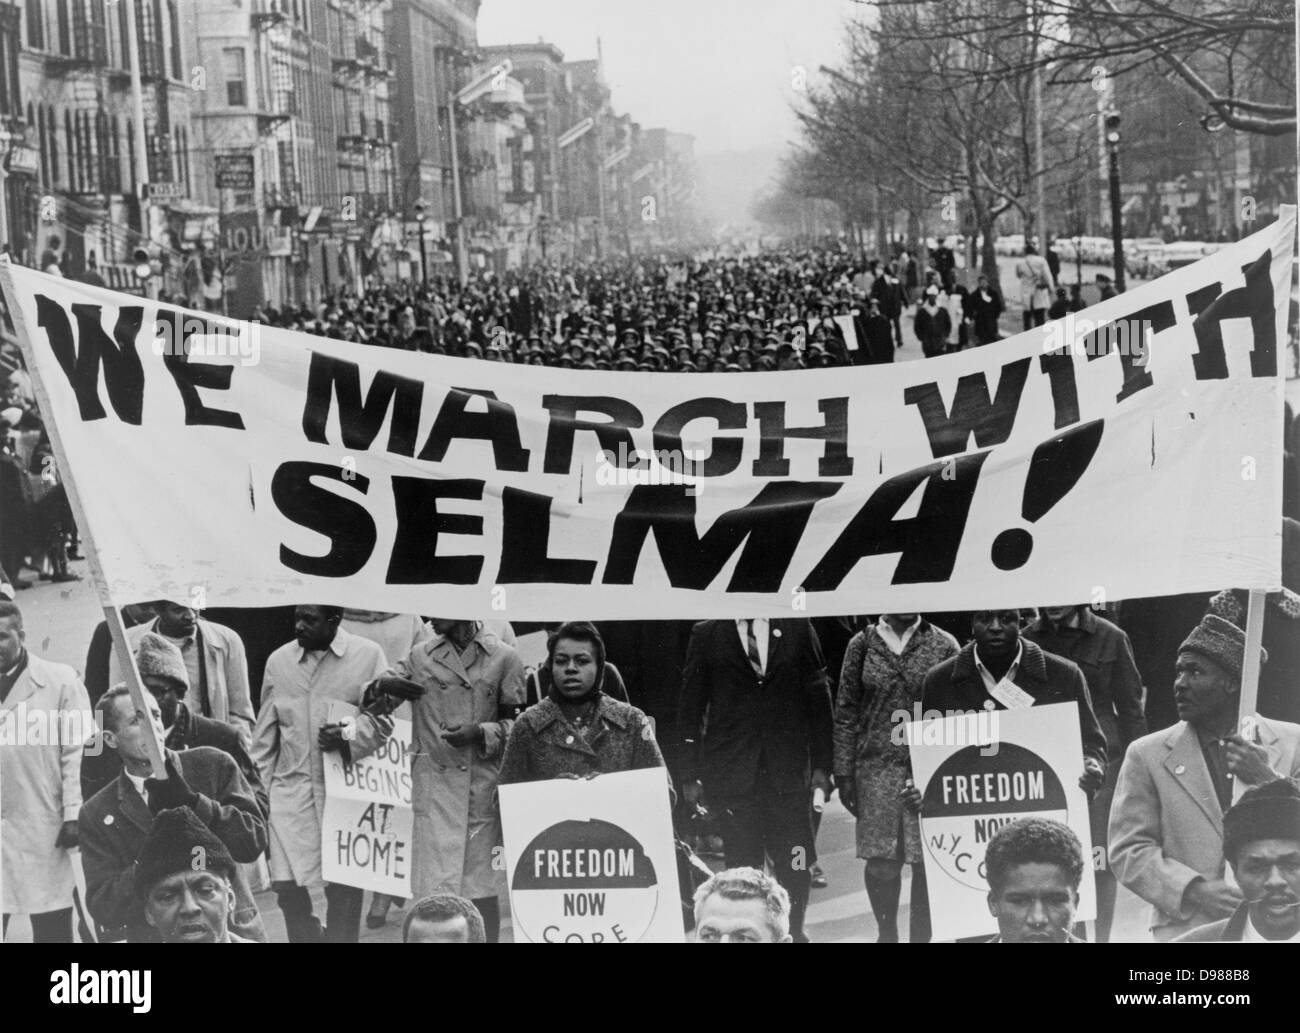 Bannière marcheurs transportant 15 000 montrer le chemin comme parade. La photographie montre la bannière marcheurs portant 'nous mars avec Selma !' sur street à Harlem, New York City, New York. Mars 1965. ' World Telegram & Sun' photographie de Stanley Wolfson. Banque D'Images